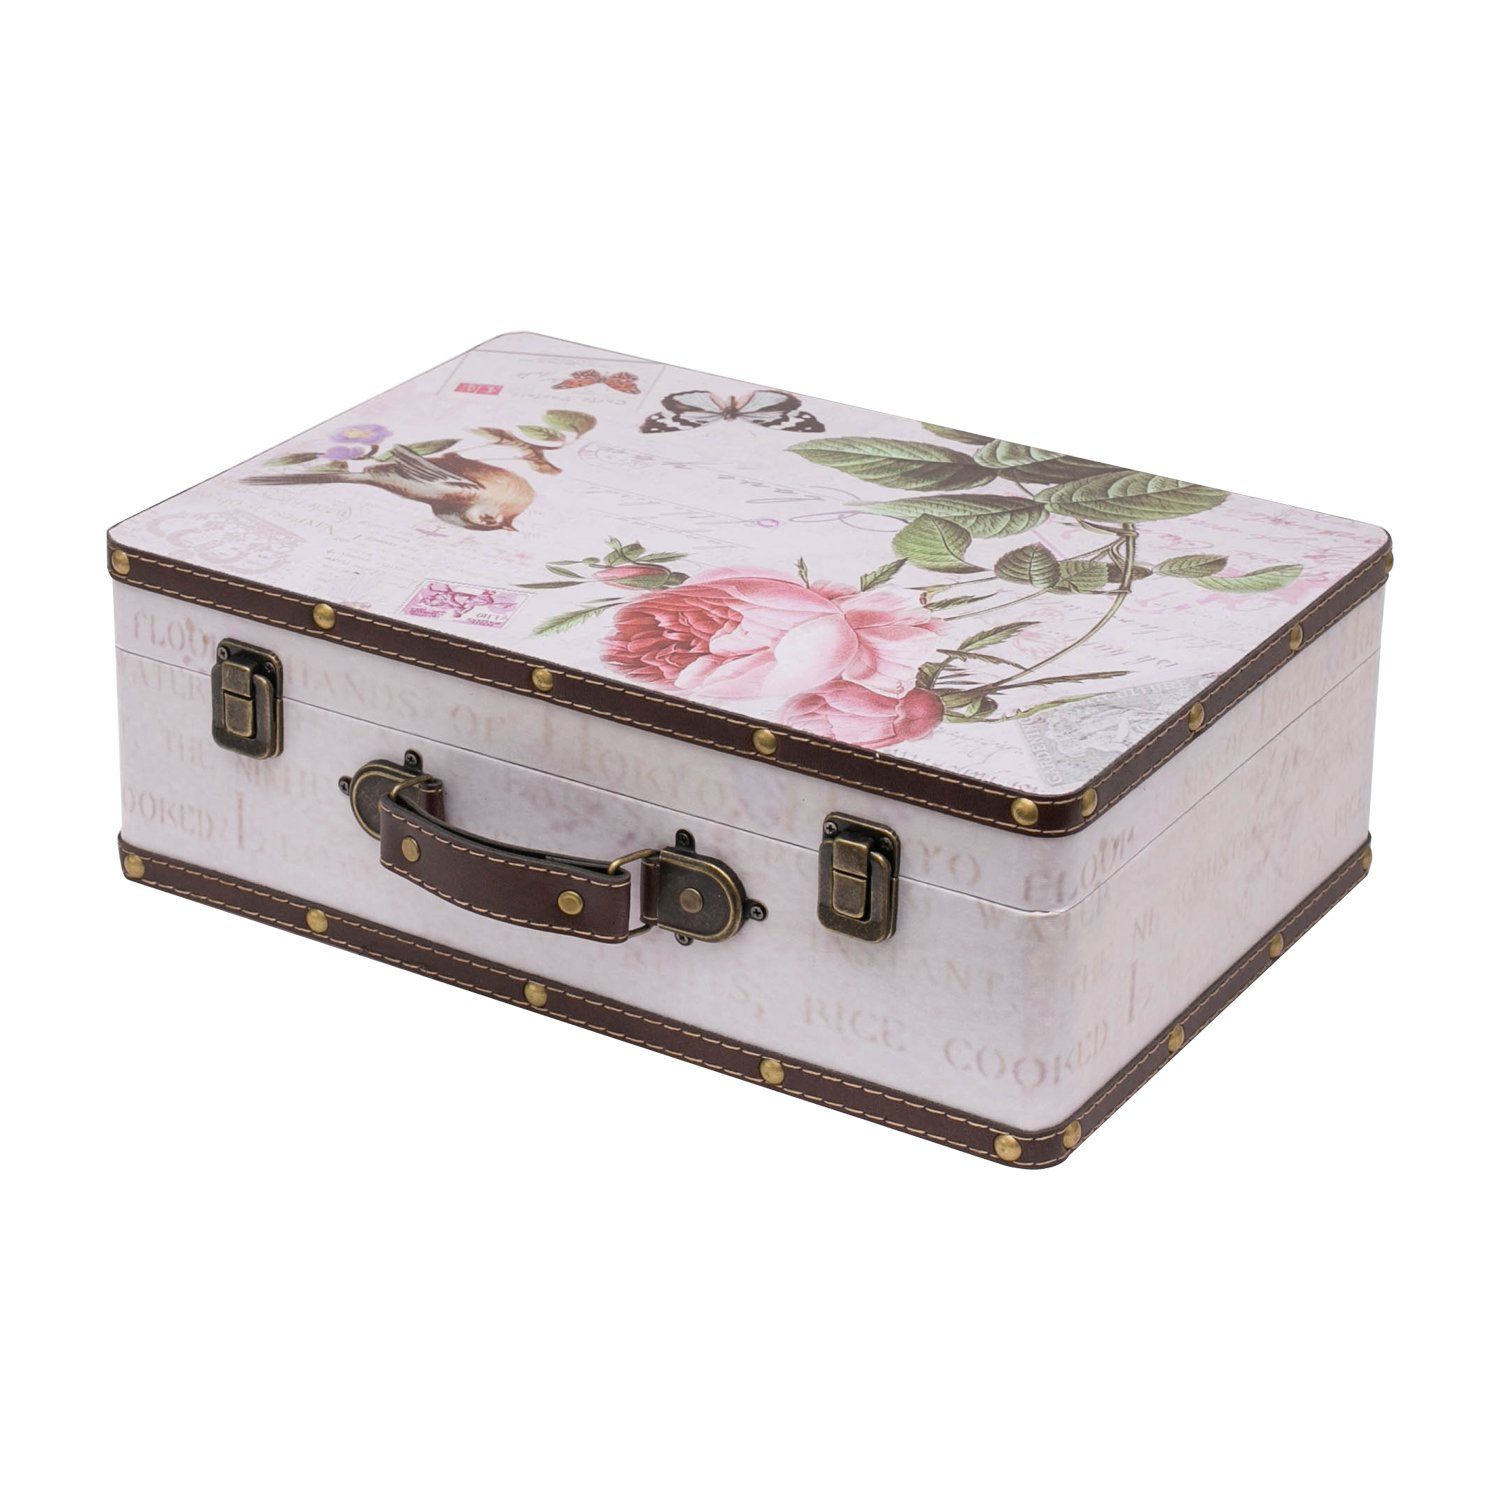 HMF Aufbewahrungsbox »Vintage Koffer«, aus Holz, Deko Rose, 38 x 26 x 13 cm  online kaufen | OTTO